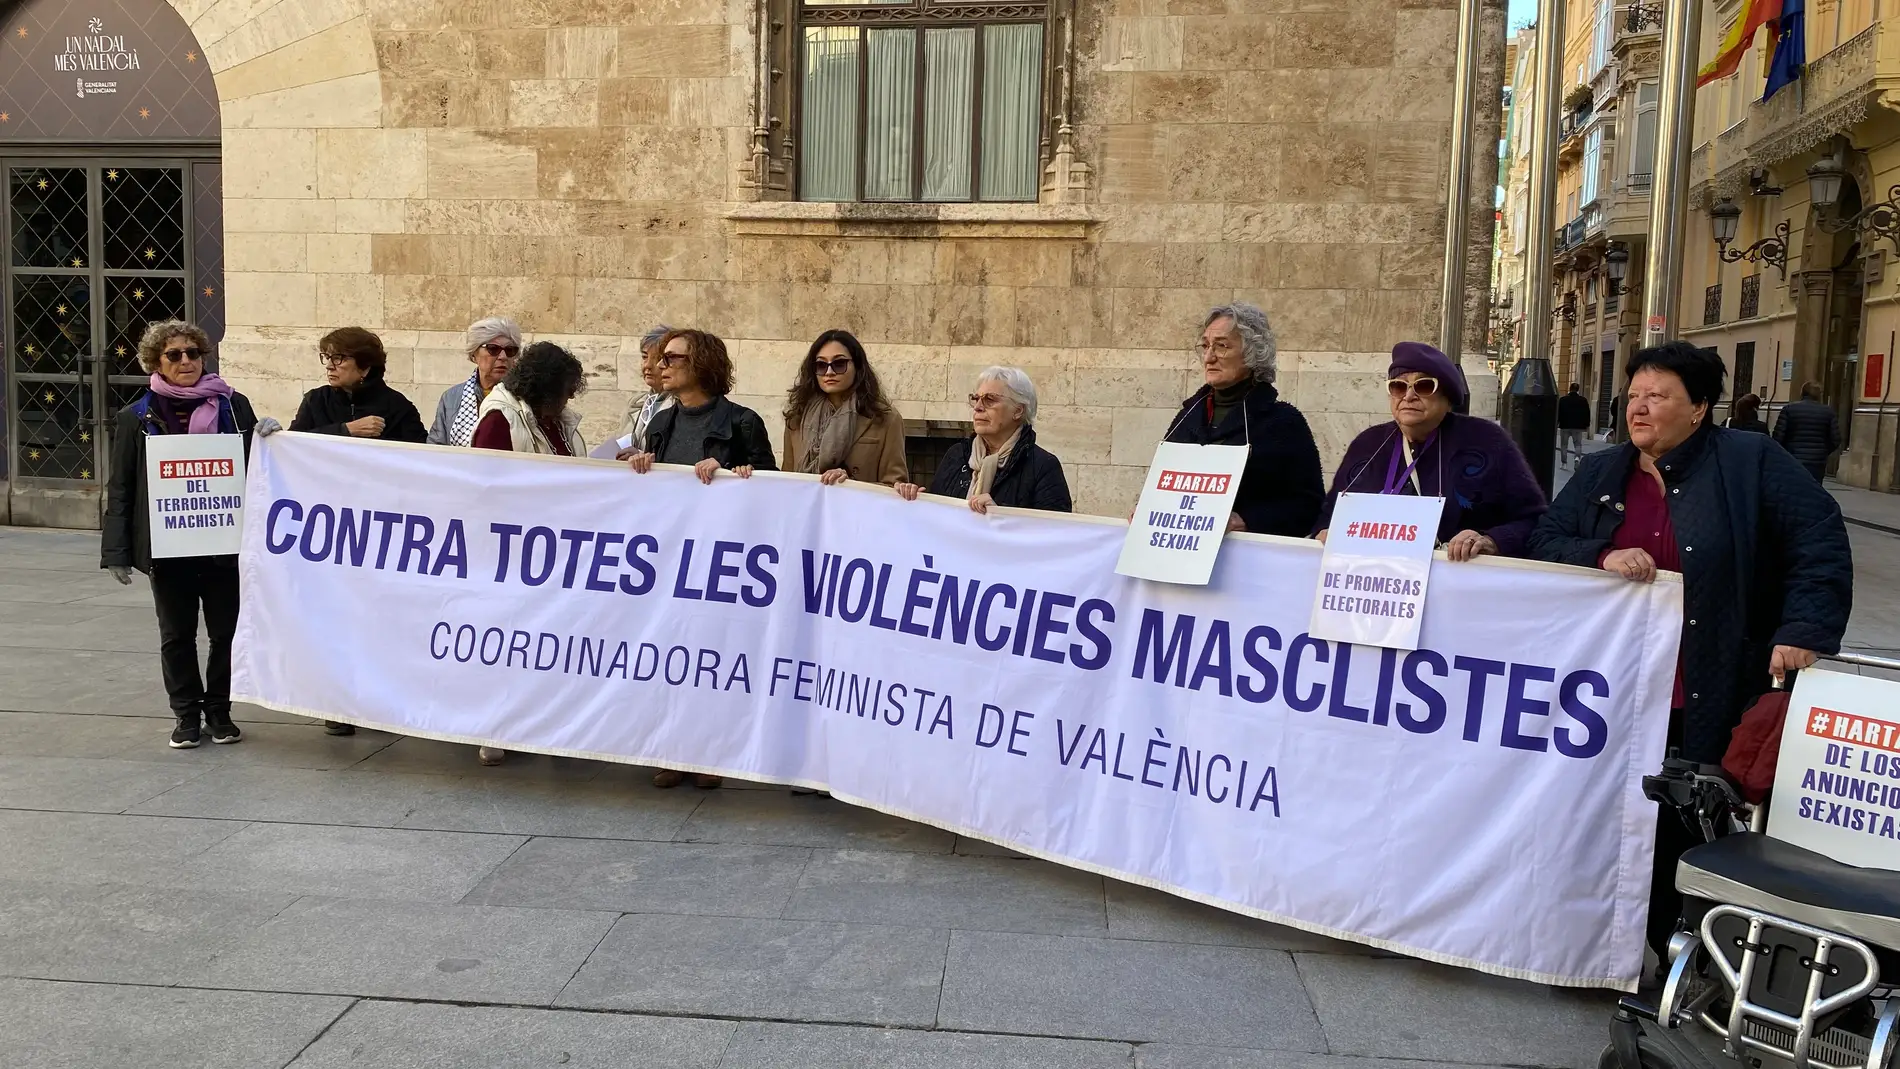 La coordinadora feminista exige la dimisión de la consellera de justicia